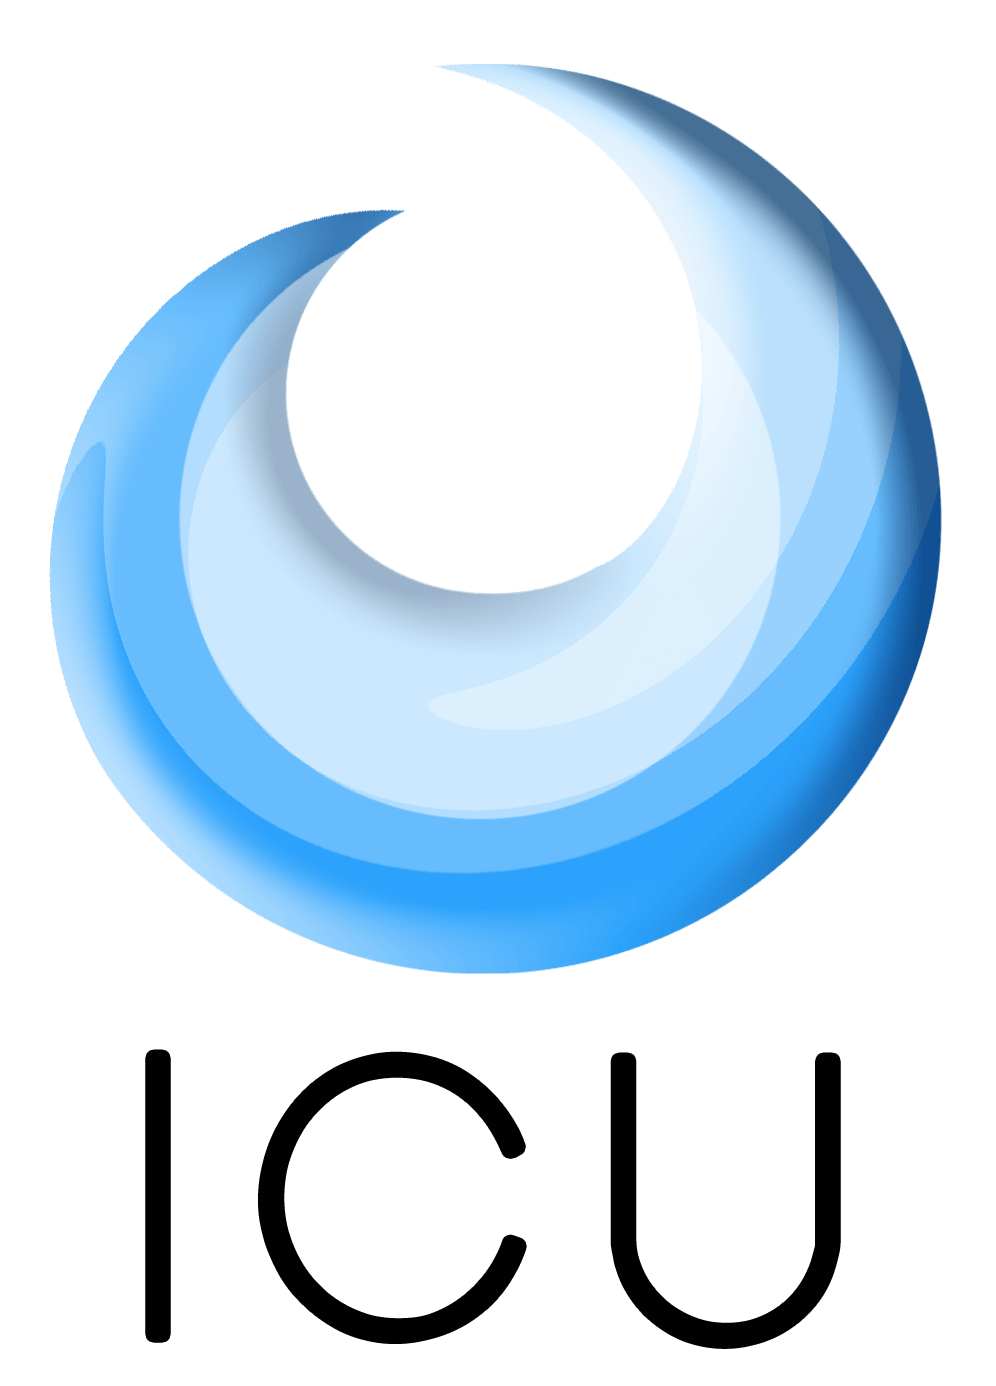 ICU Logo - ICU-logo – Manu Keggenhoff